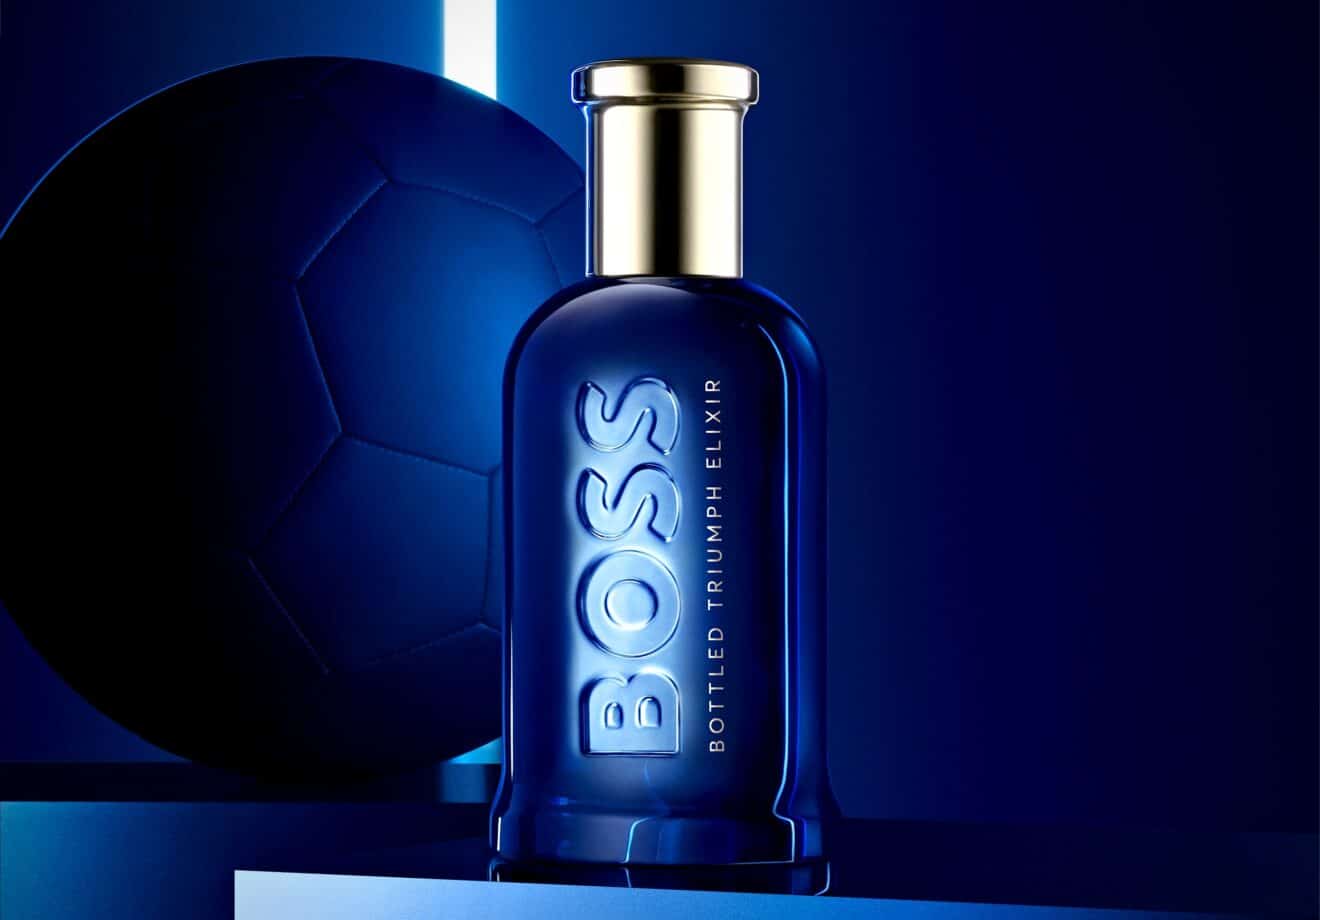 Hugo Boss dévoile son nouveau parfum masculin et il est (presque) inattendu